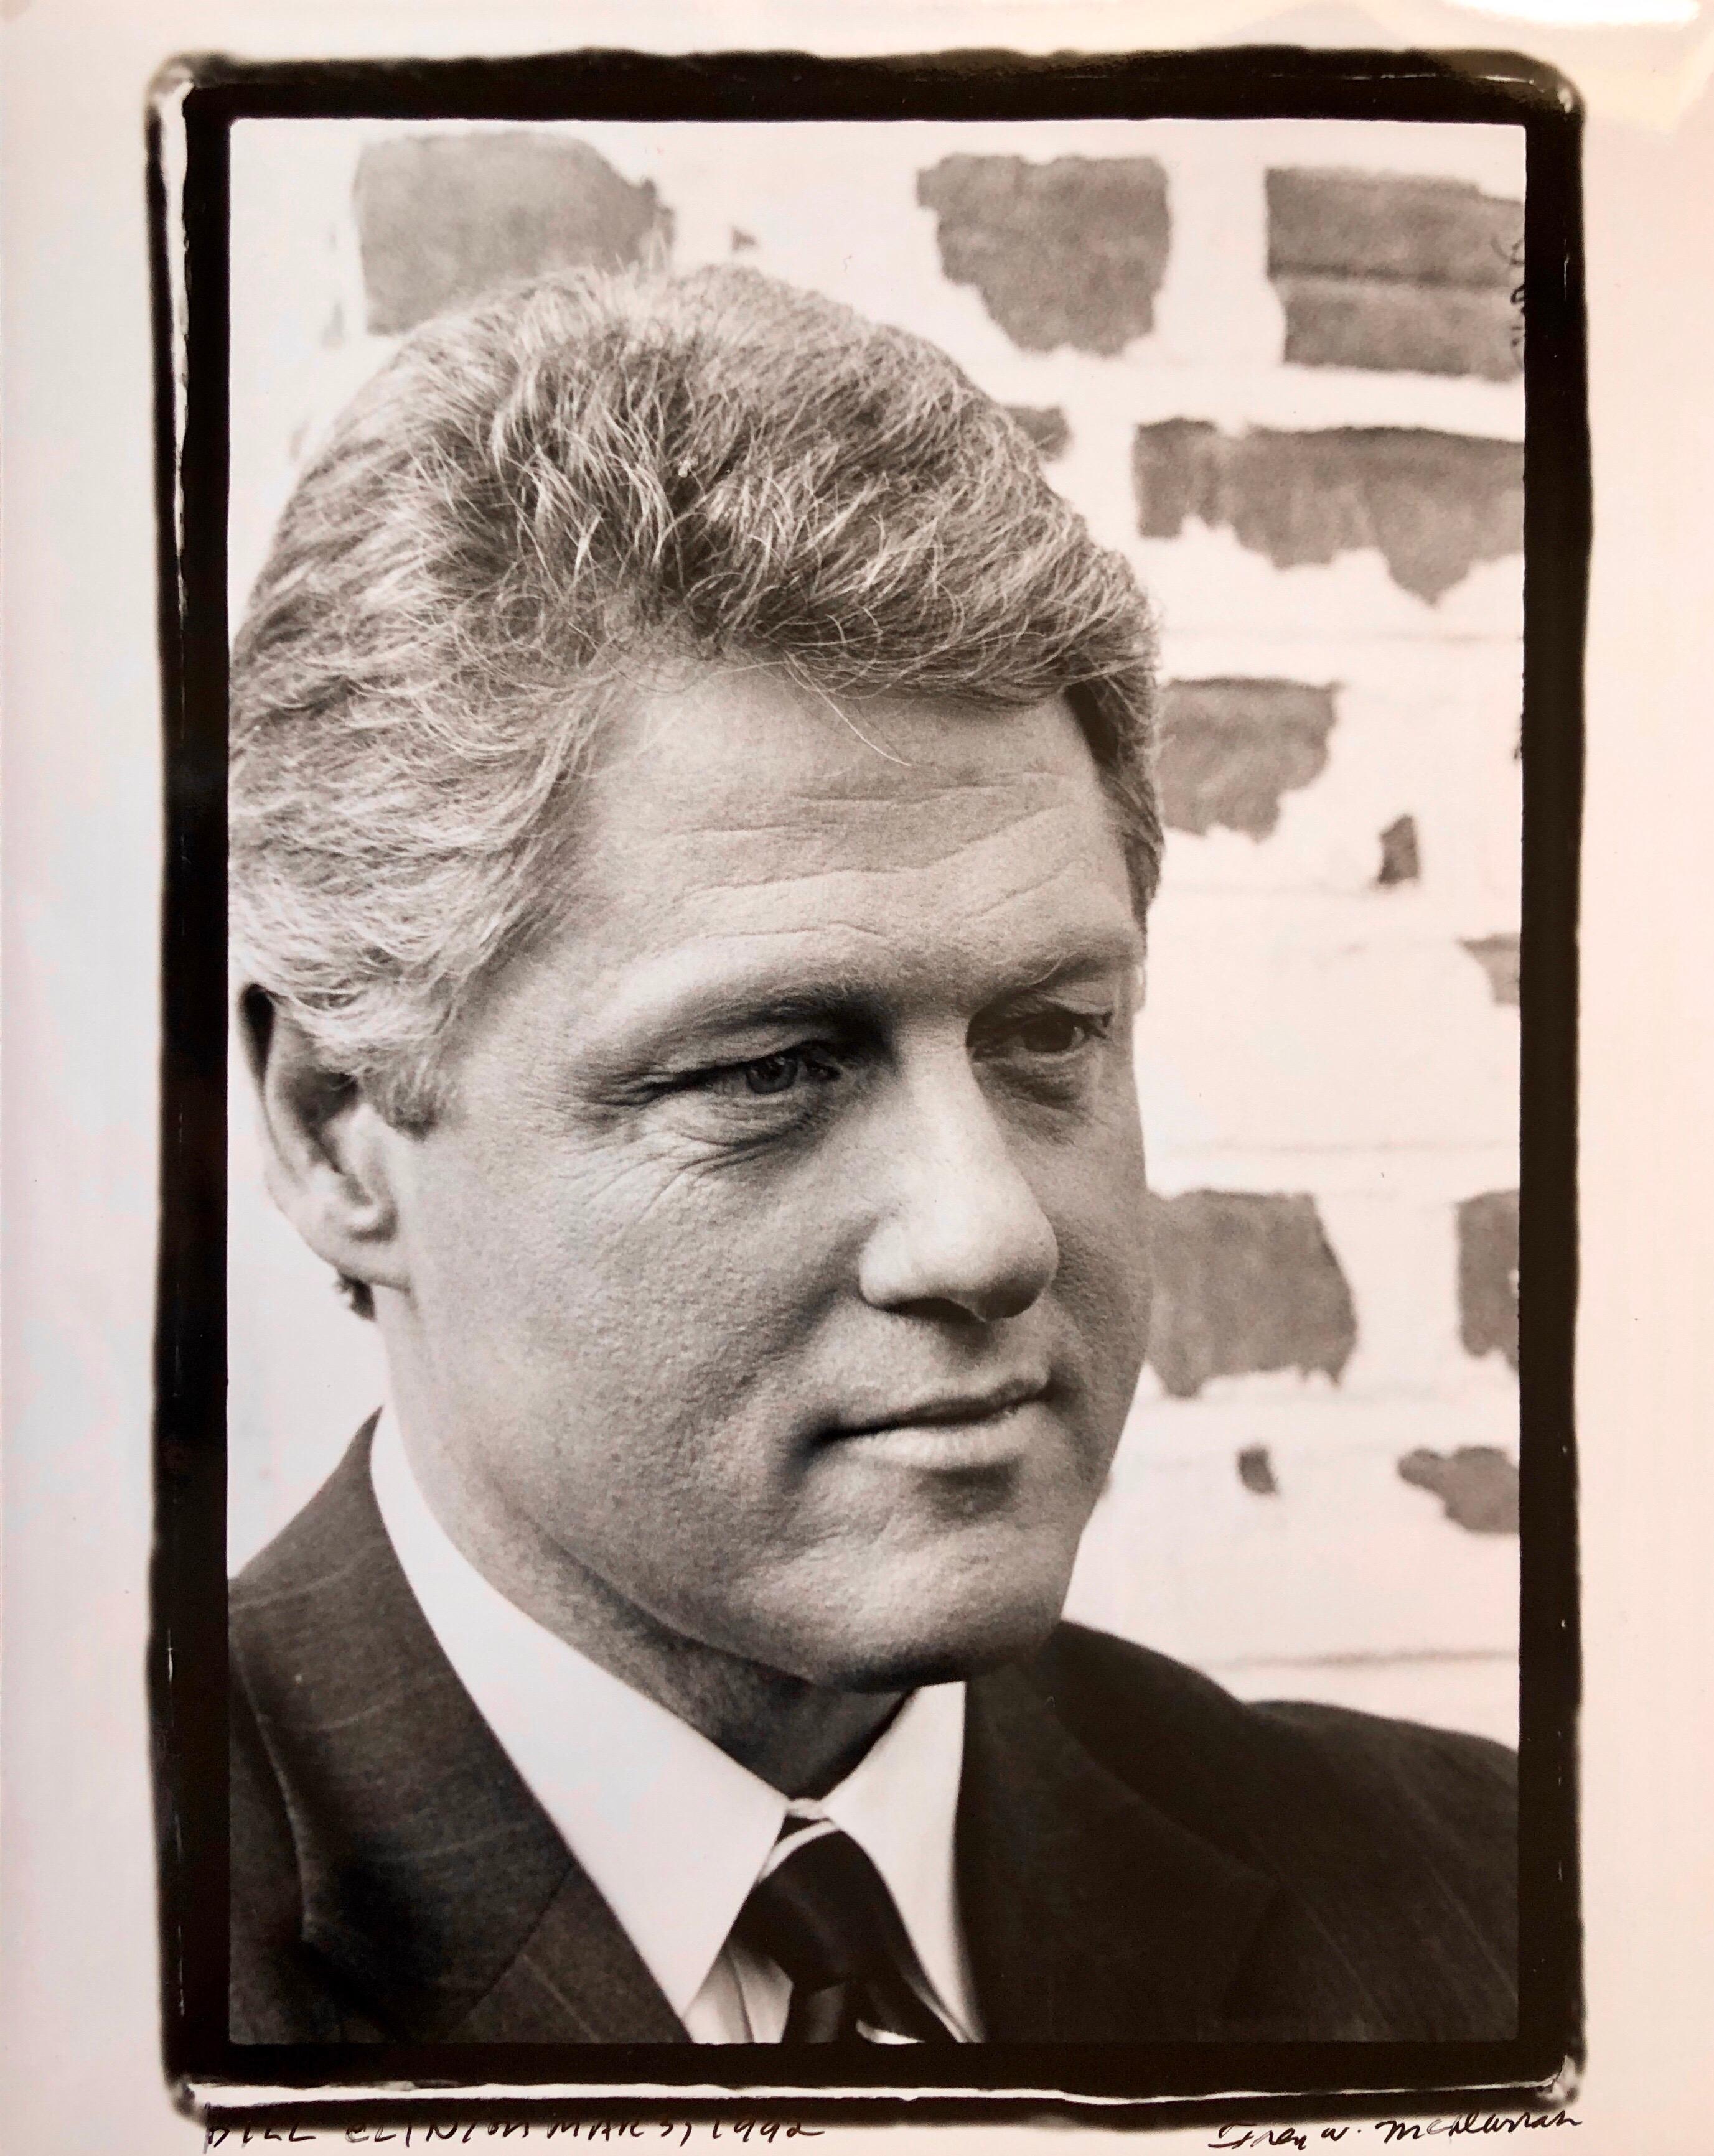 Fred McDarrah Figurative Photograph – Vintage-Porträt von Präsident Bill Clinton, signiert, Silber-Gelatine-Druck, Vintage